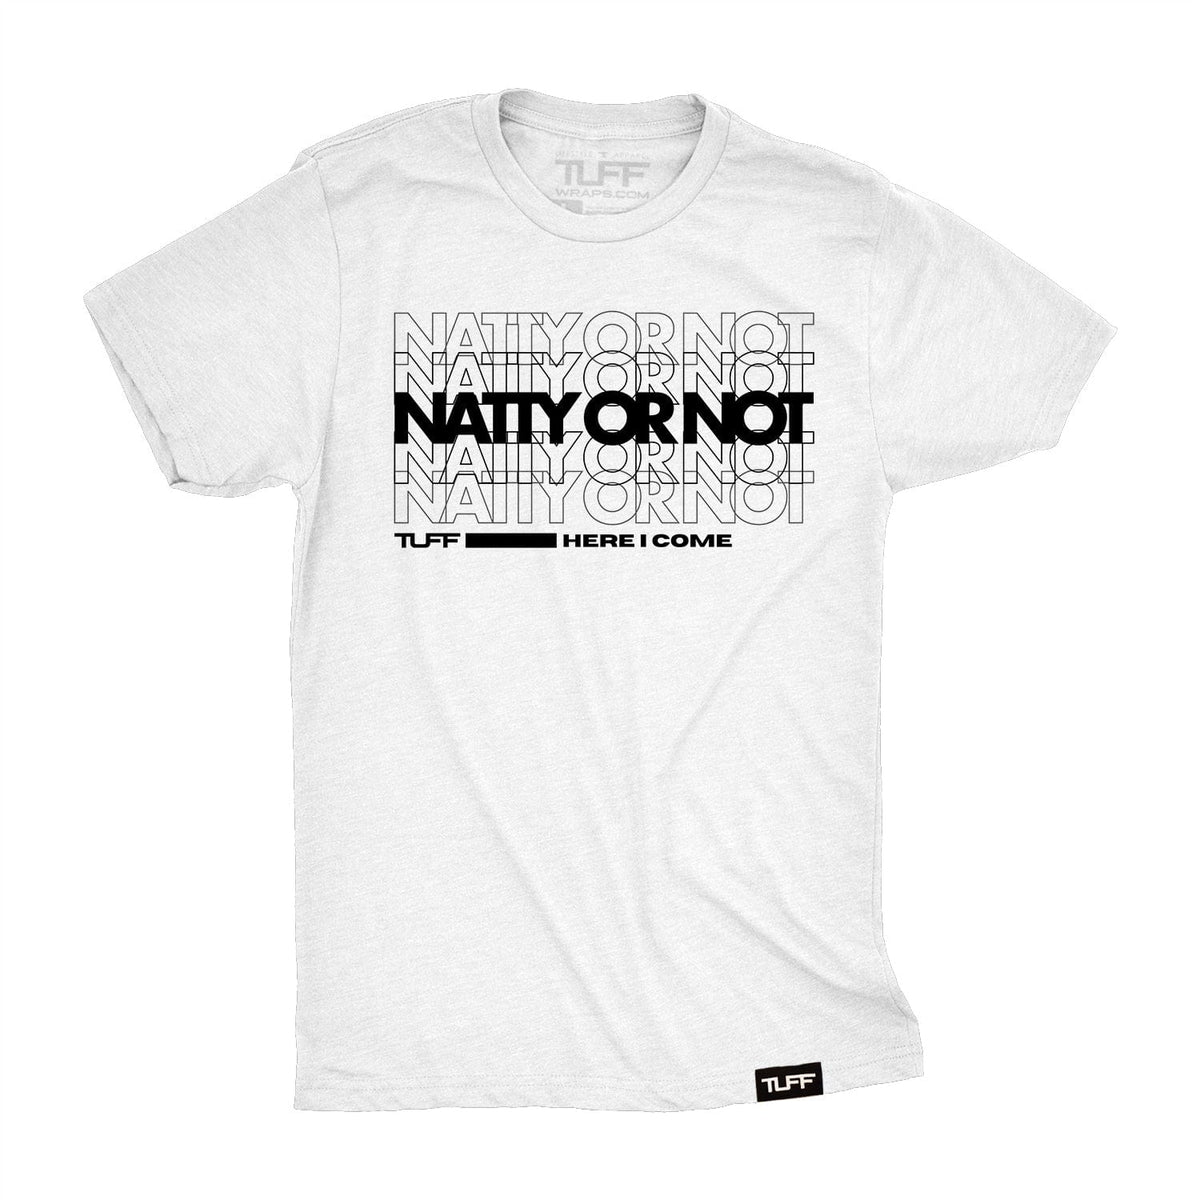 Natty Or Not Tee S / White TuffWraps.com